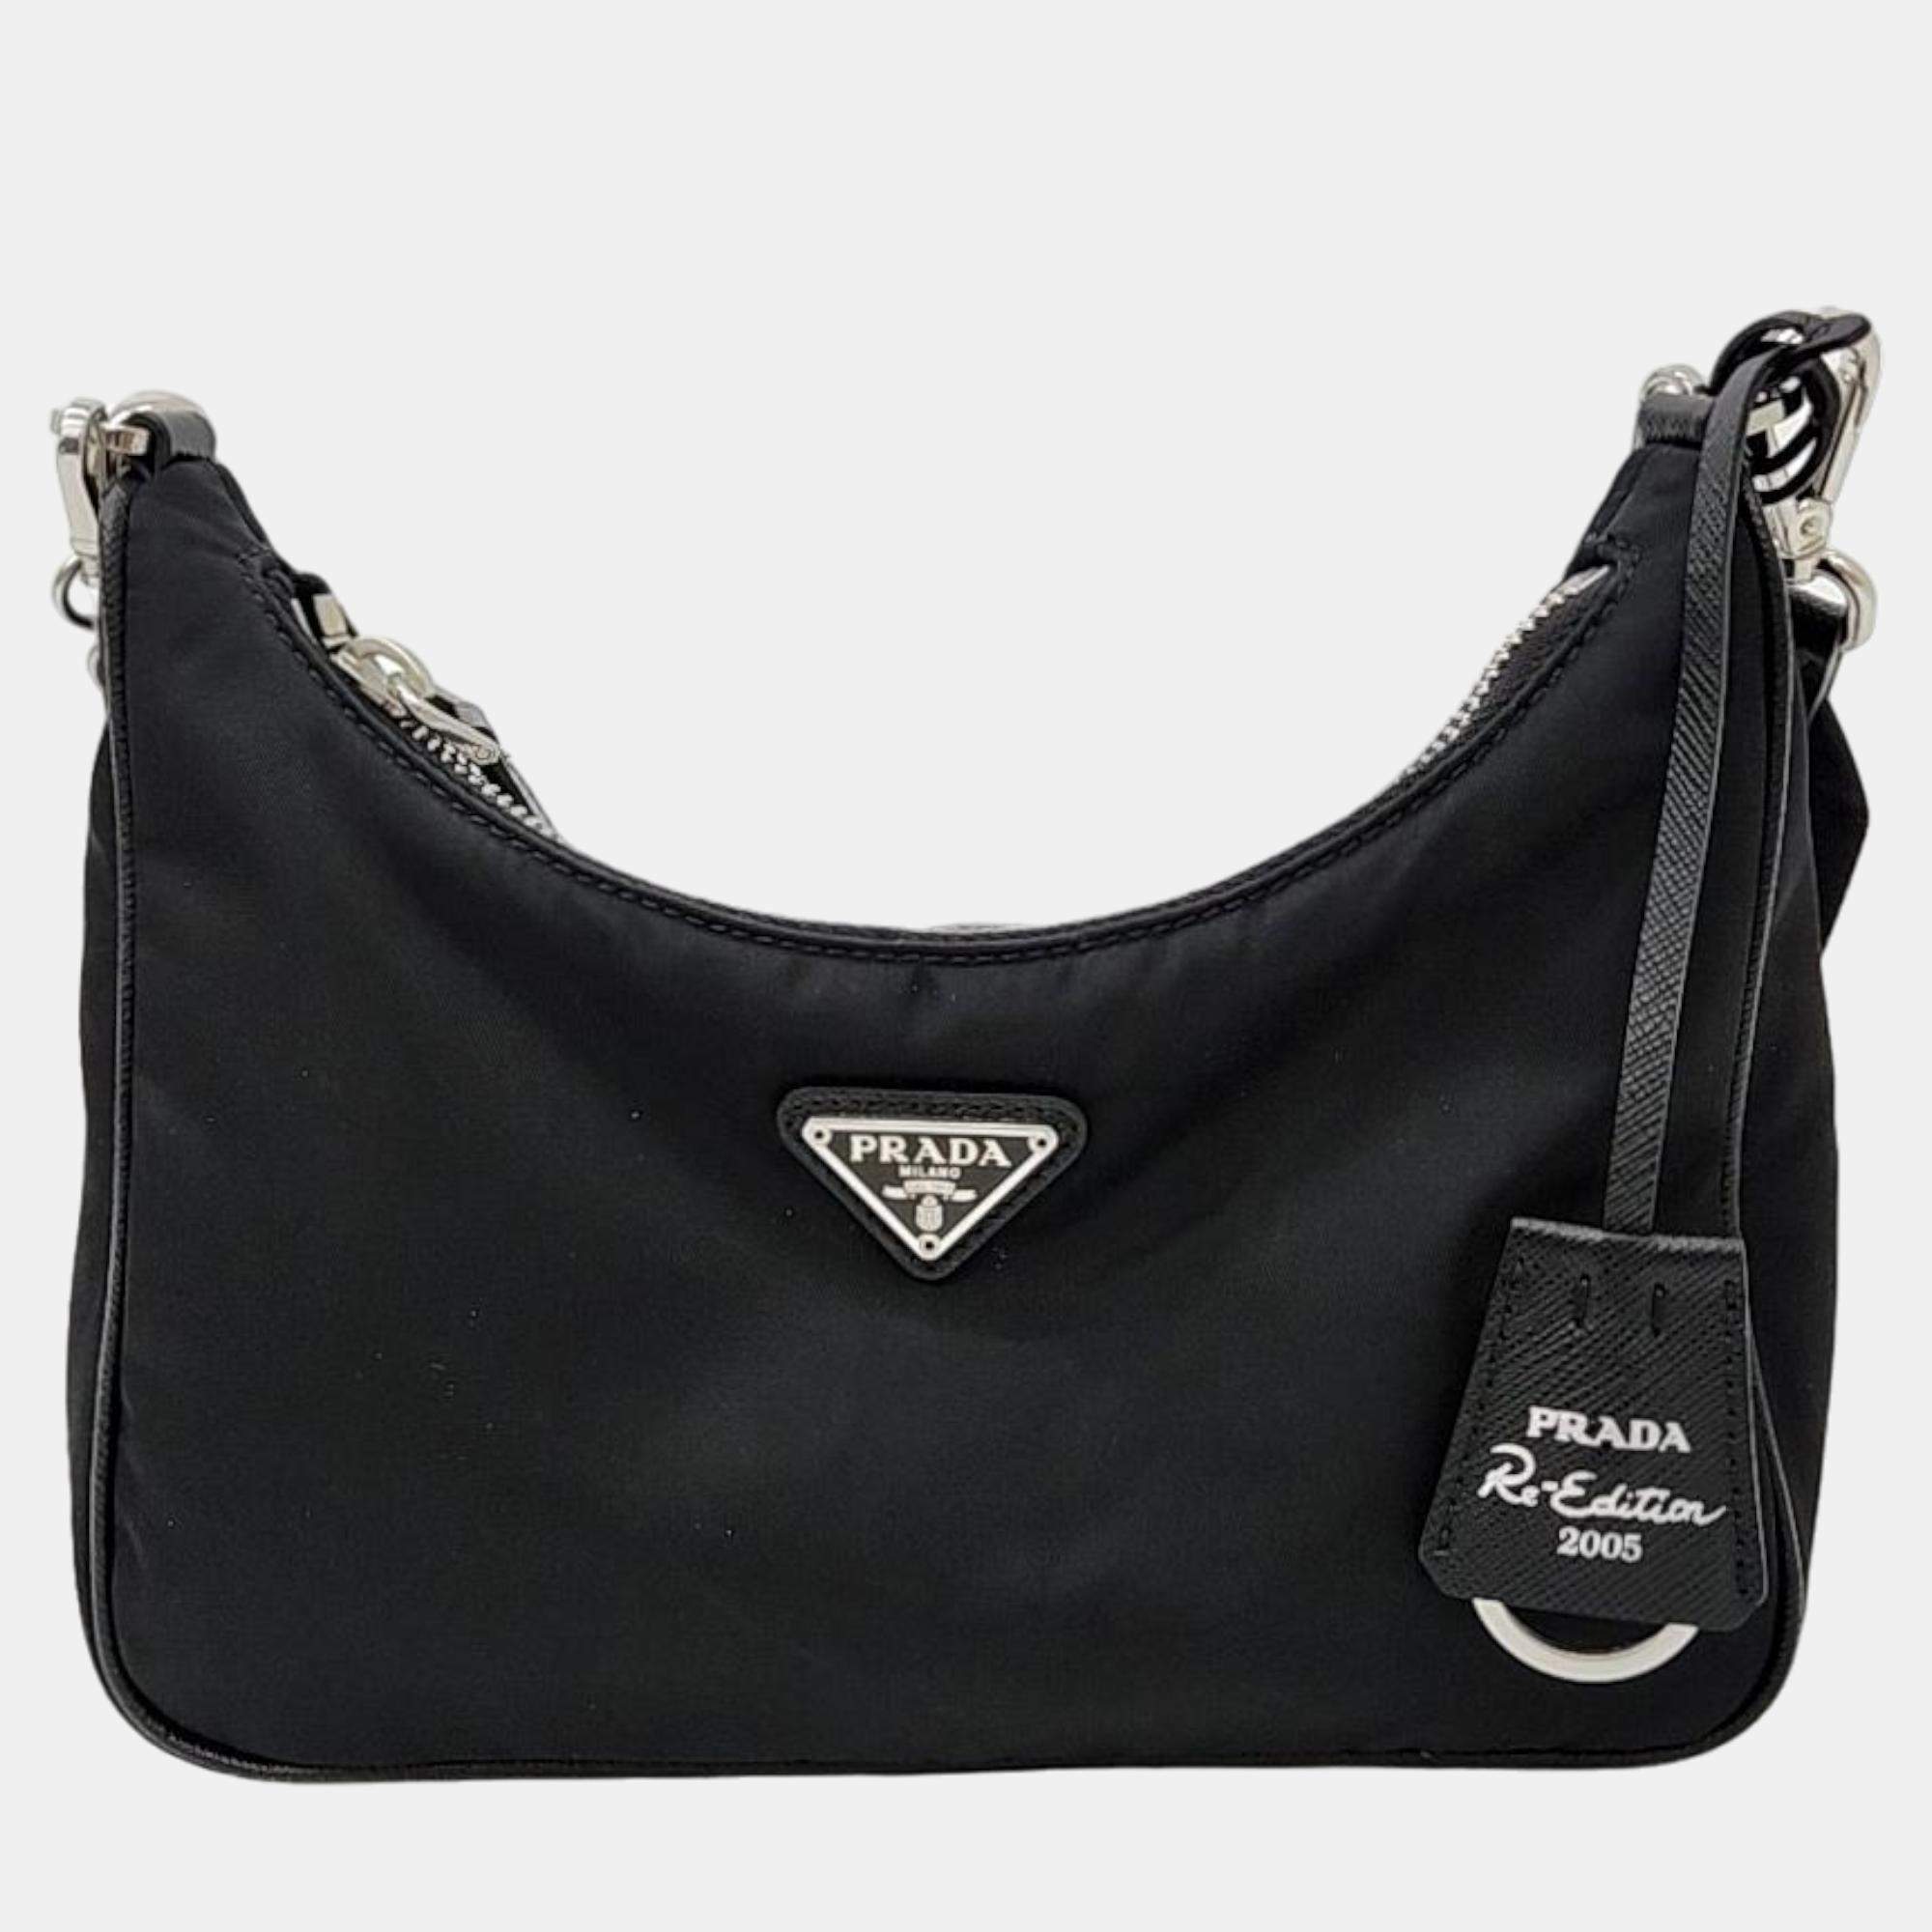 Re-edition 2005 cloth handbag Prada Black in Cloth - 41956248